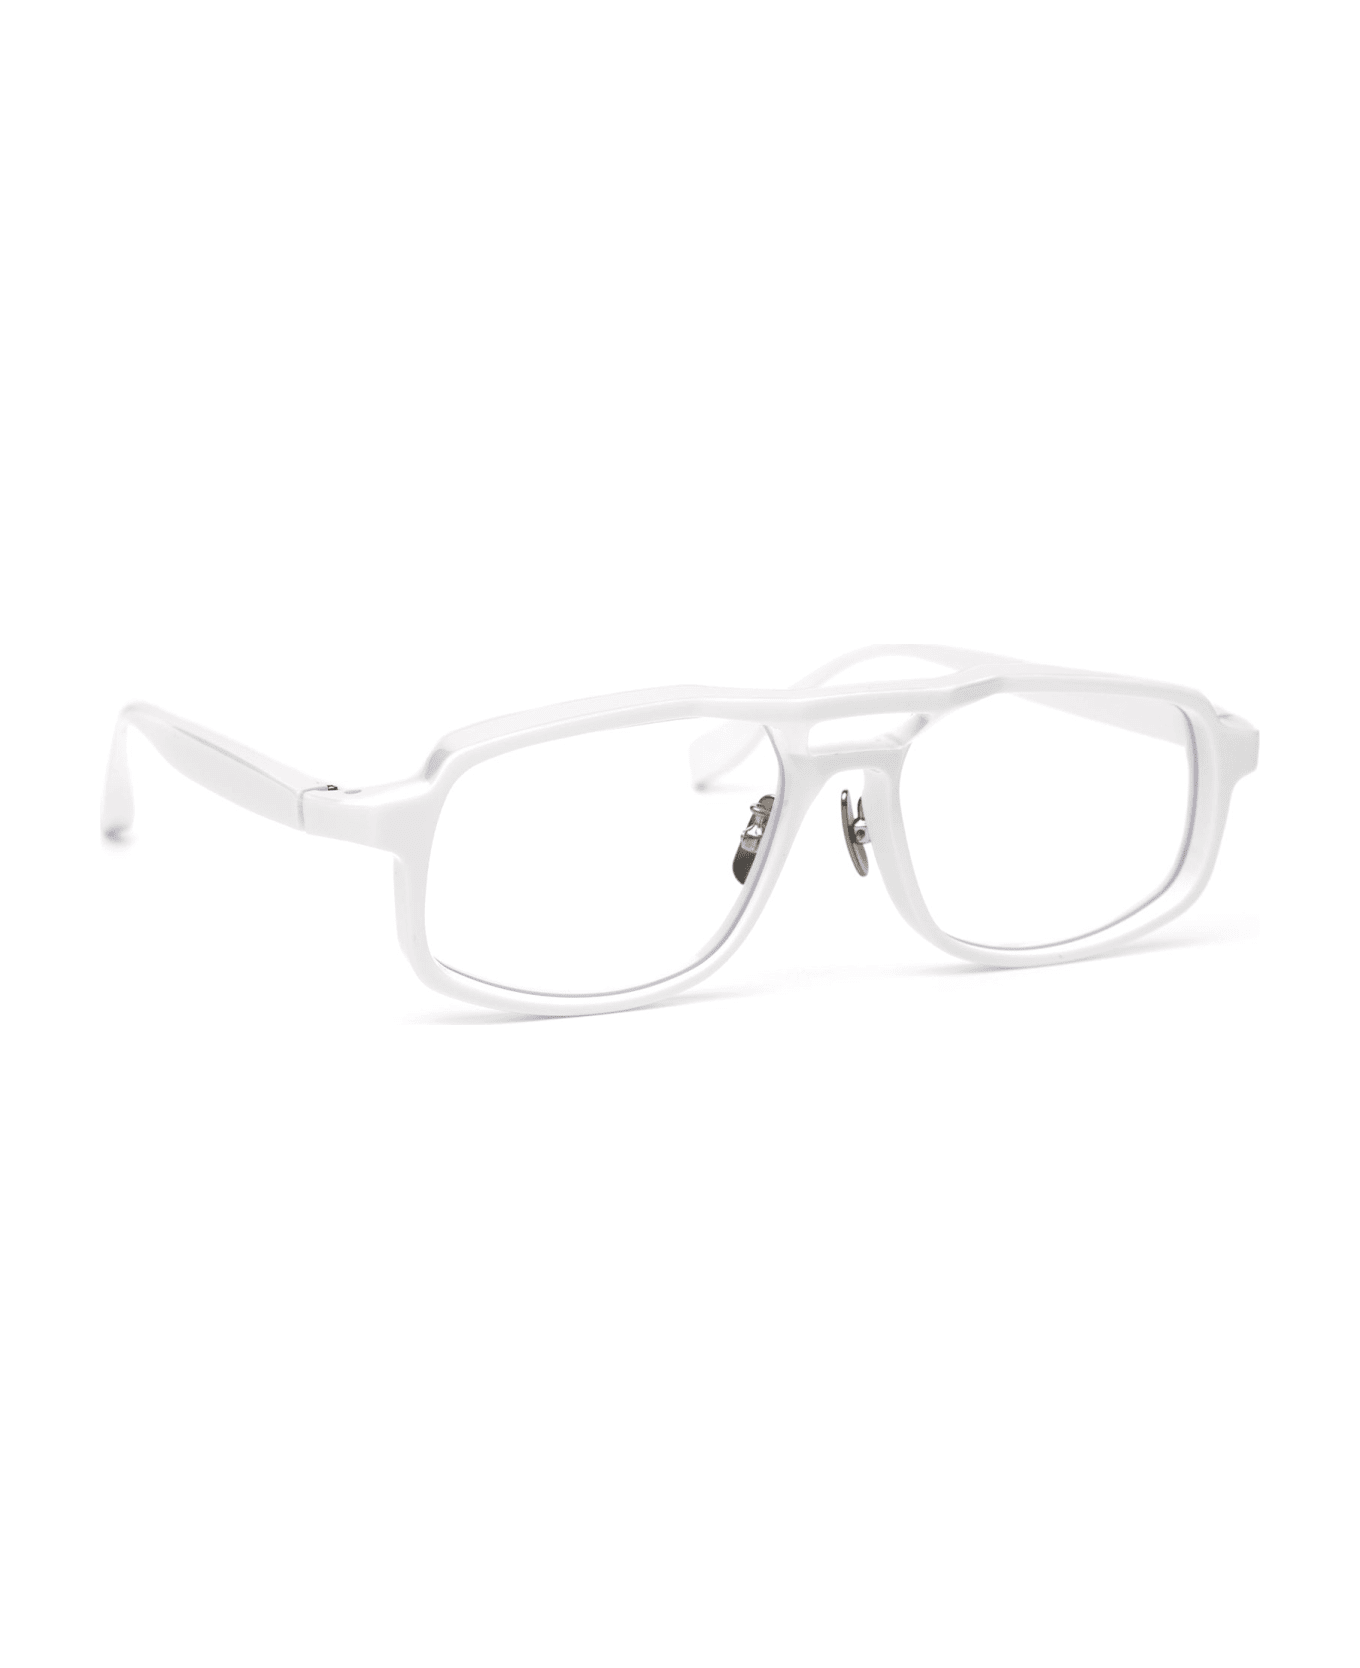 FACTORY900 Rf-160 - White Glasses - White